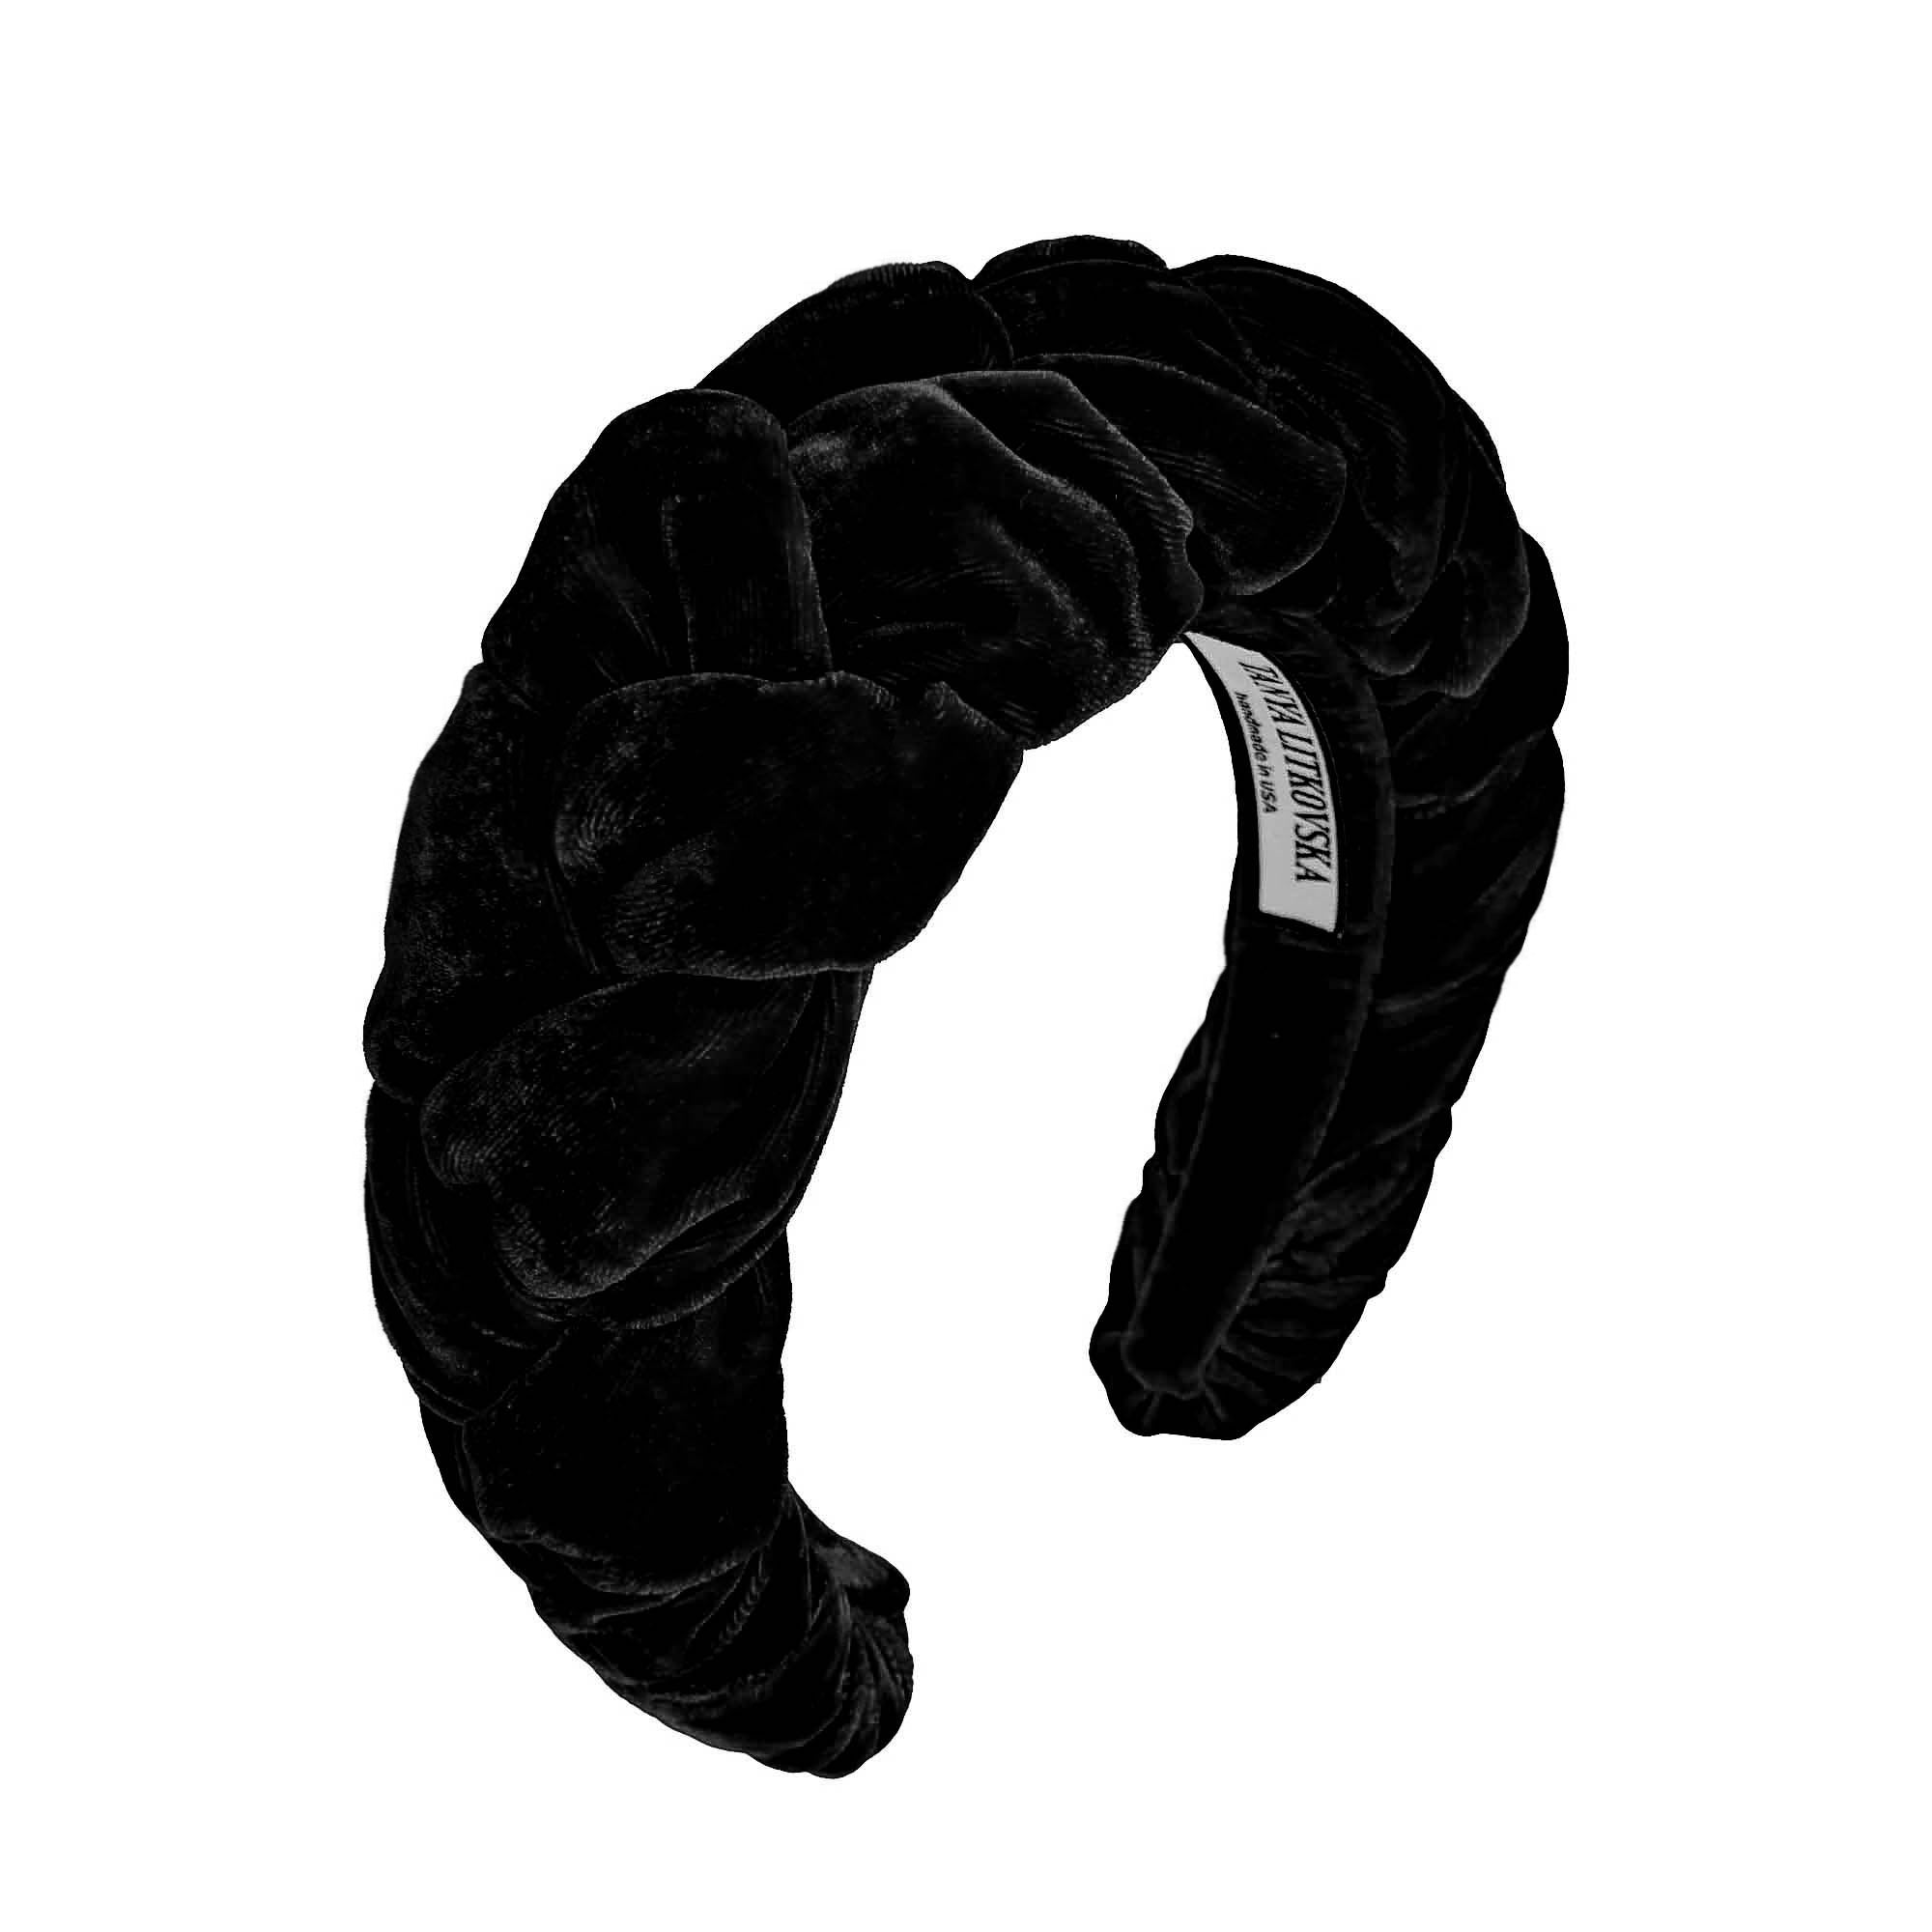 thick headband | black velvet headband braid | black headbands by tanya litkovska